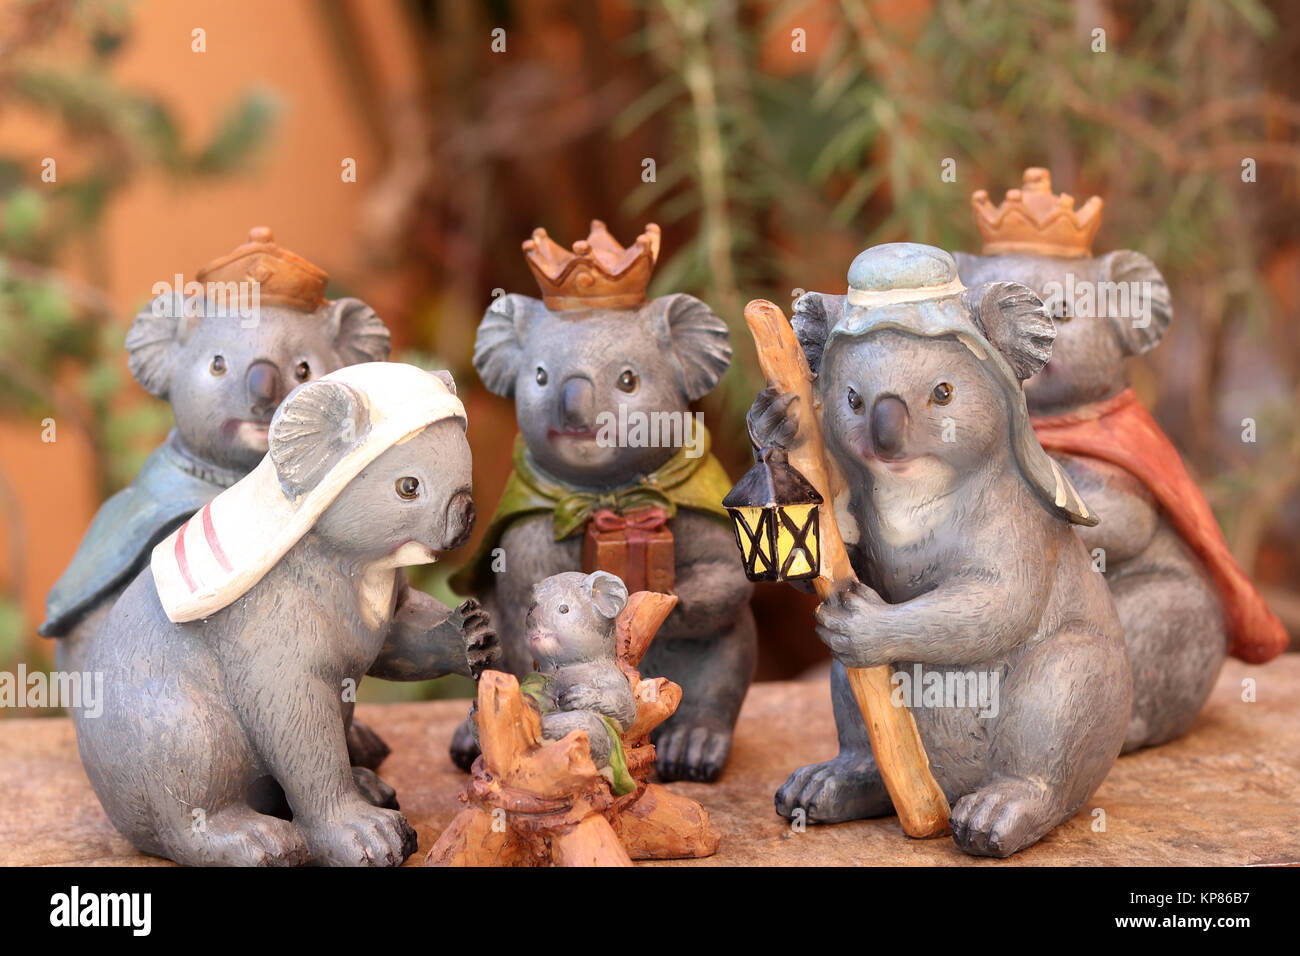 Immagini Koala Natale.Decorazioni Di Natale Koala Immagini E Fotos Stock Alamy